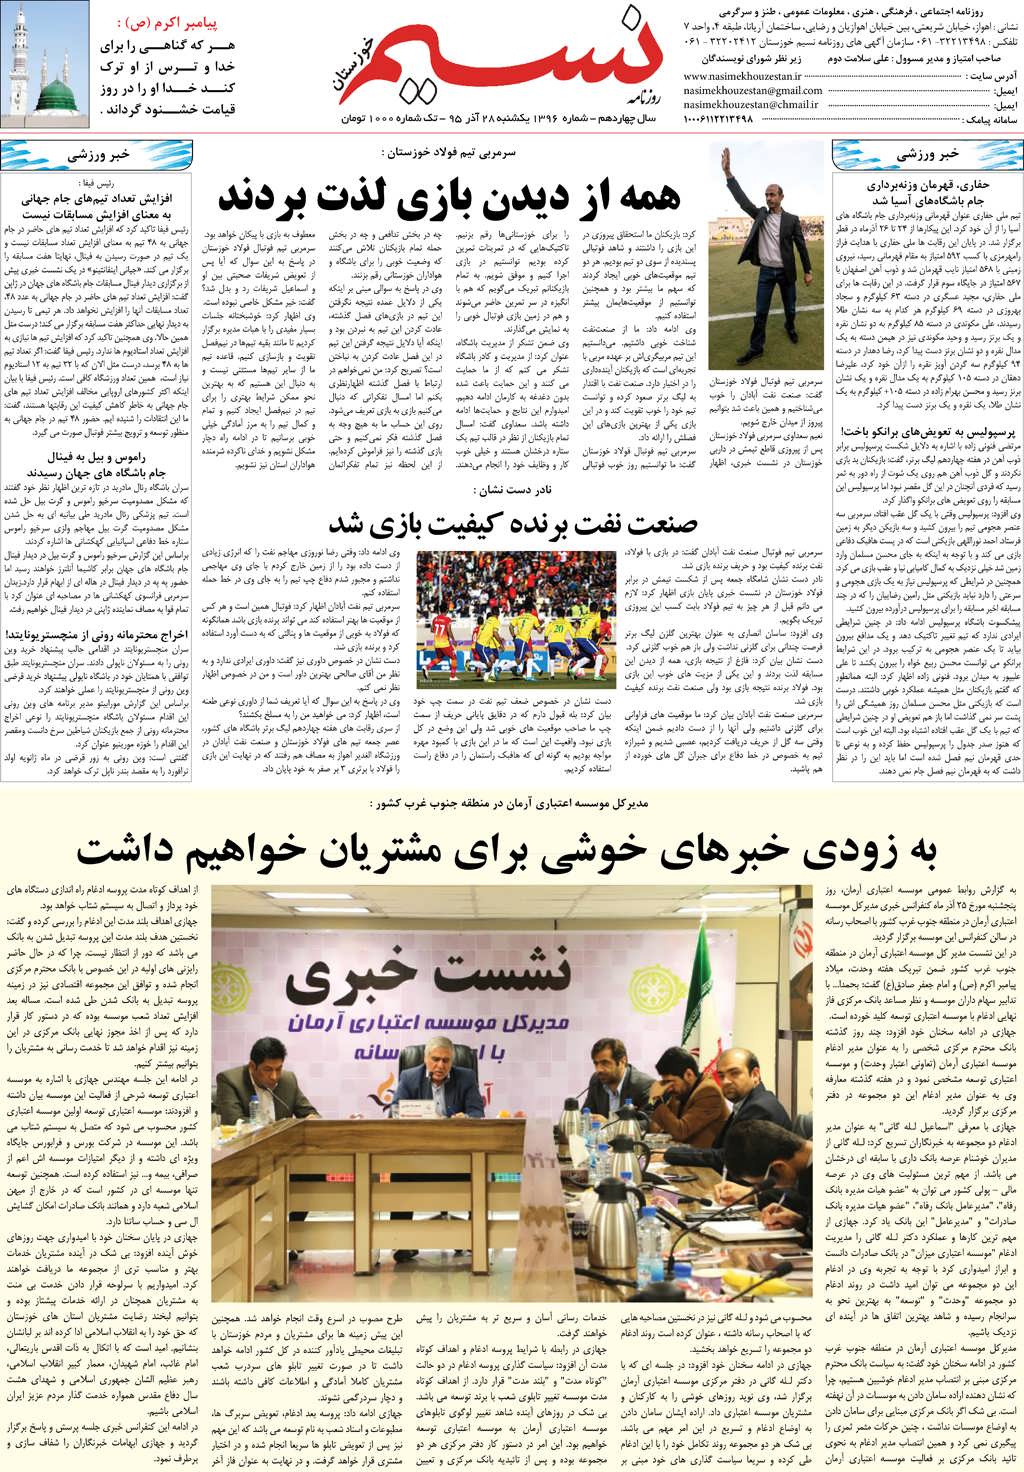 صفحه آخر روزنامه نسیم شماره 1396